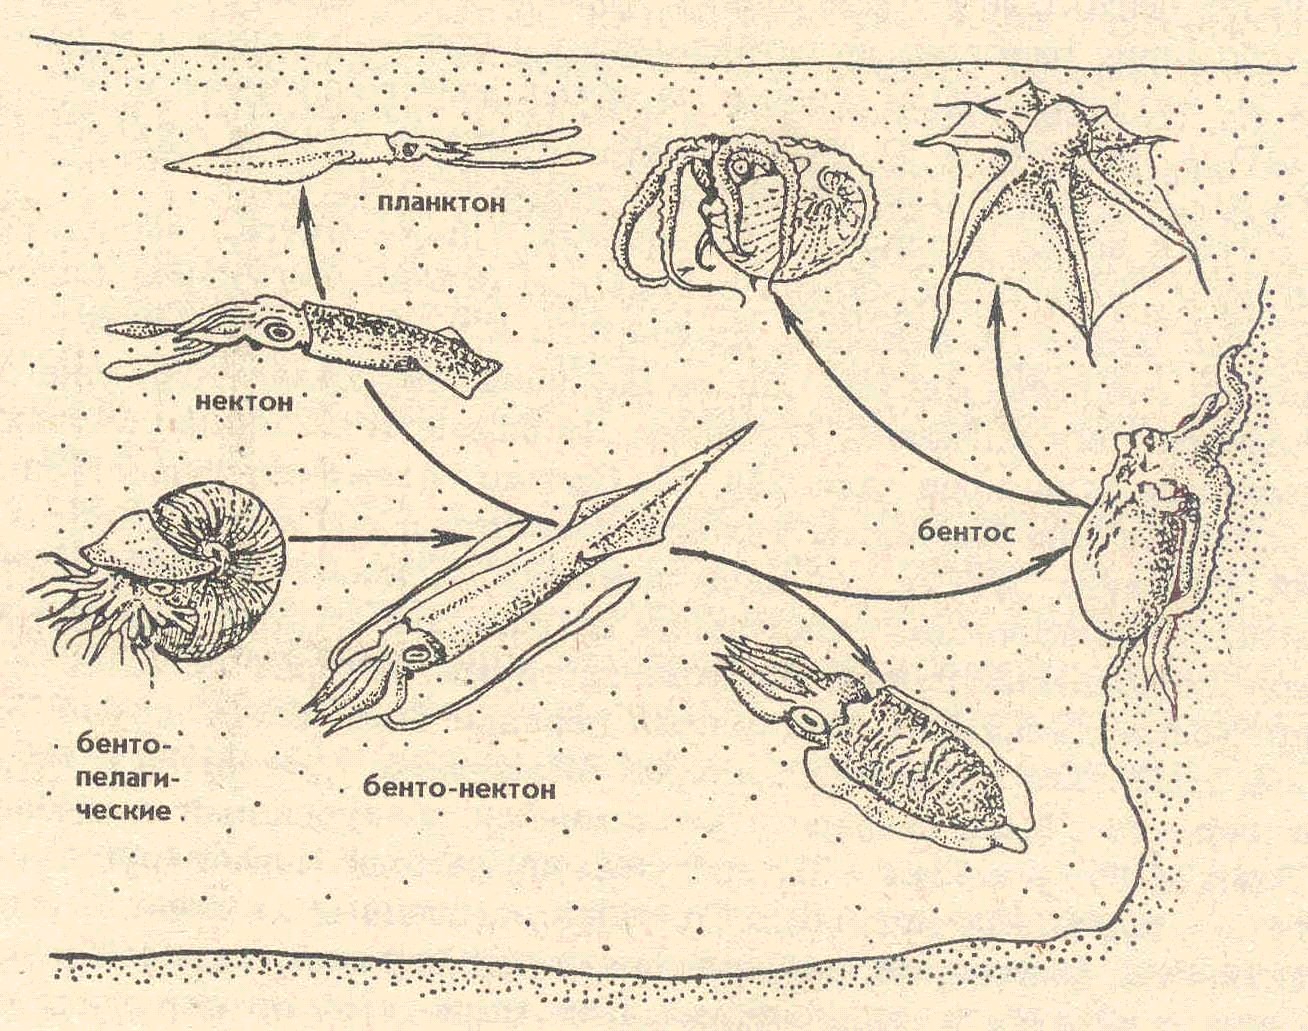 Развитие головоногих. Жизненный цикл головоногих моллюсков схема. Размножение головоногих моллюсков схема. Зоопланктон и бентос. Планктон Нектон бентос.